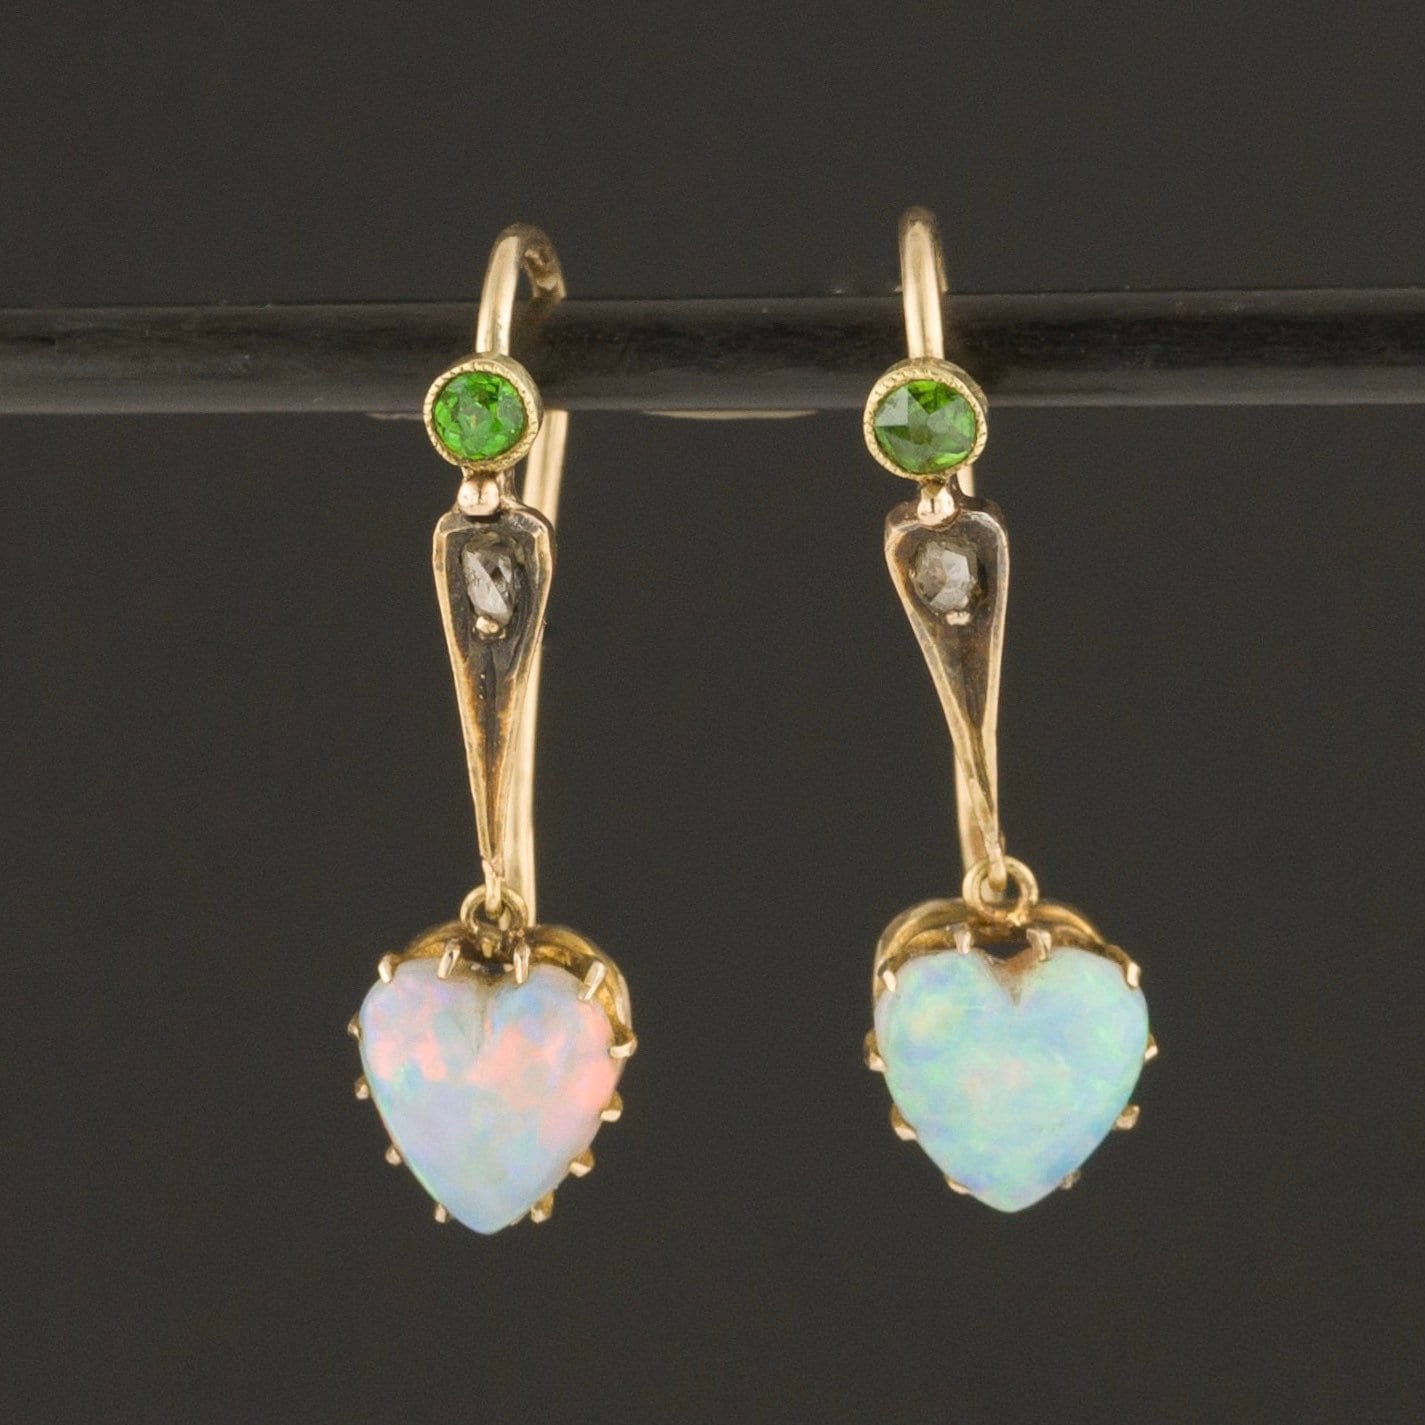 Opal Heart Earrings | Antique Opal Heart Earrings with Diamond & Demantoid Garnets 